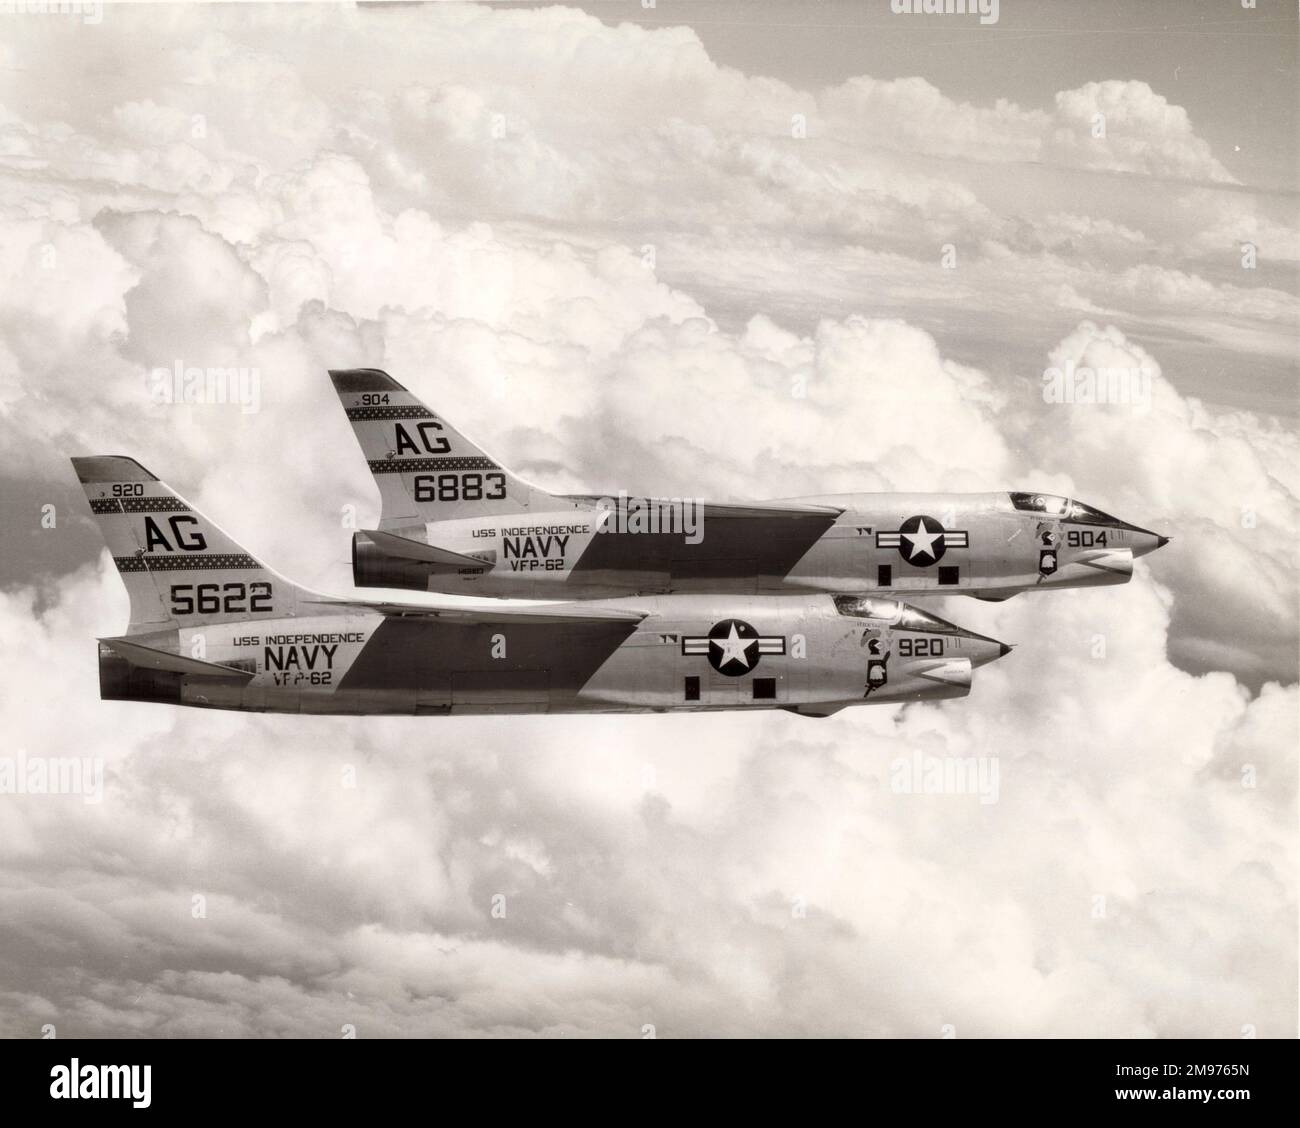 Zwei Vought F8U-1P Kreuzritter, 5622 und 6883, von der USS Independence. Ungefähr 1962. Stockfoto